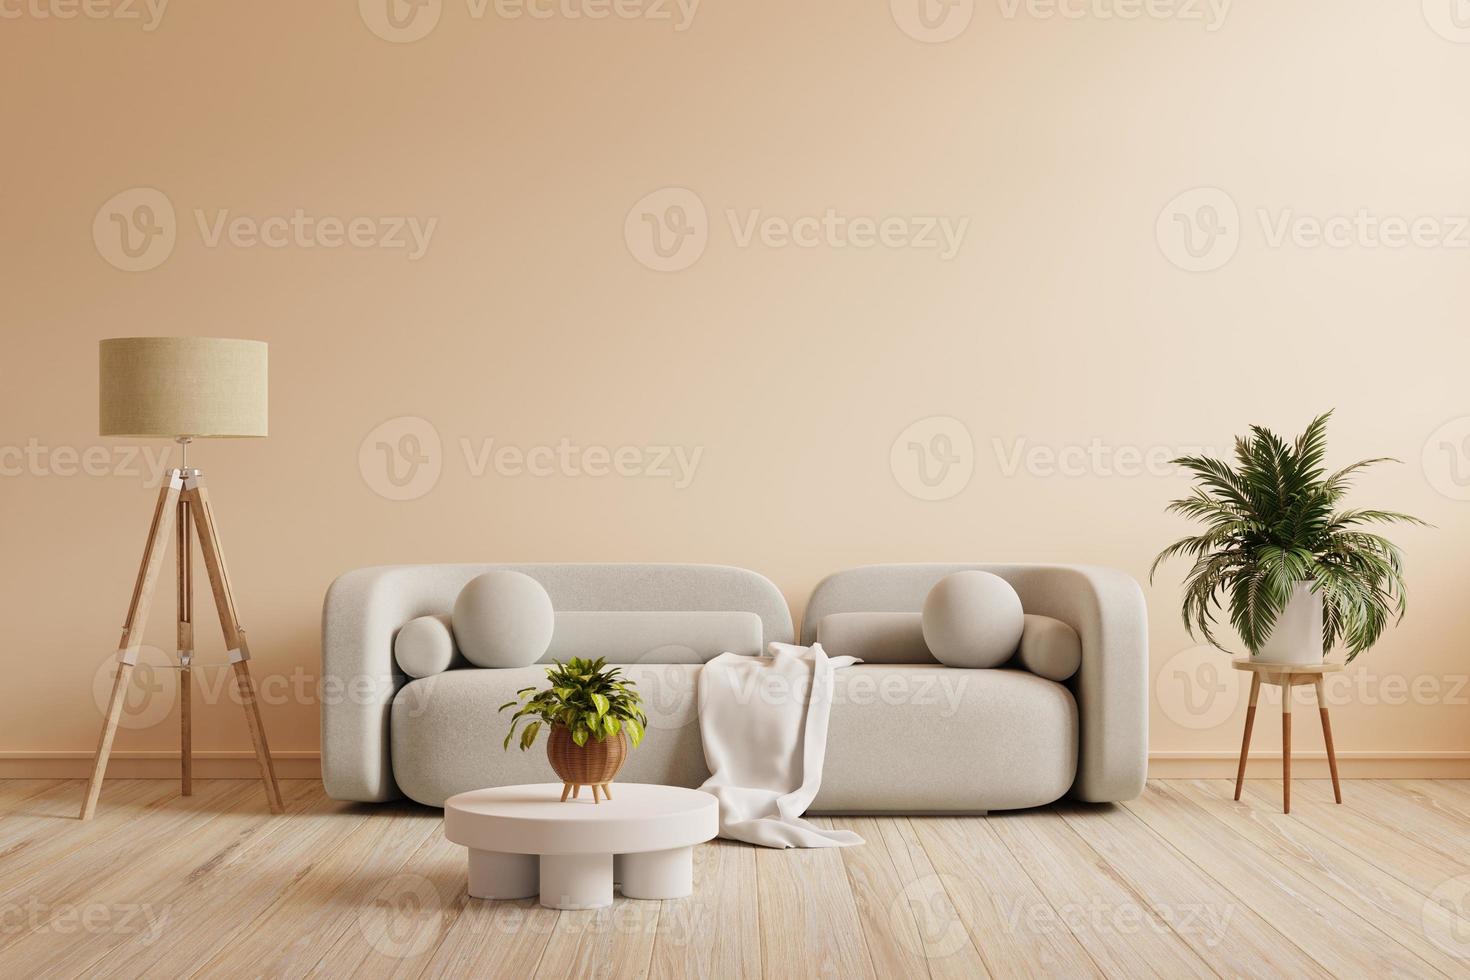 Interieur im Boho-Stil mit grauem Sofa und Dekor an cremefarbener Wand. foto